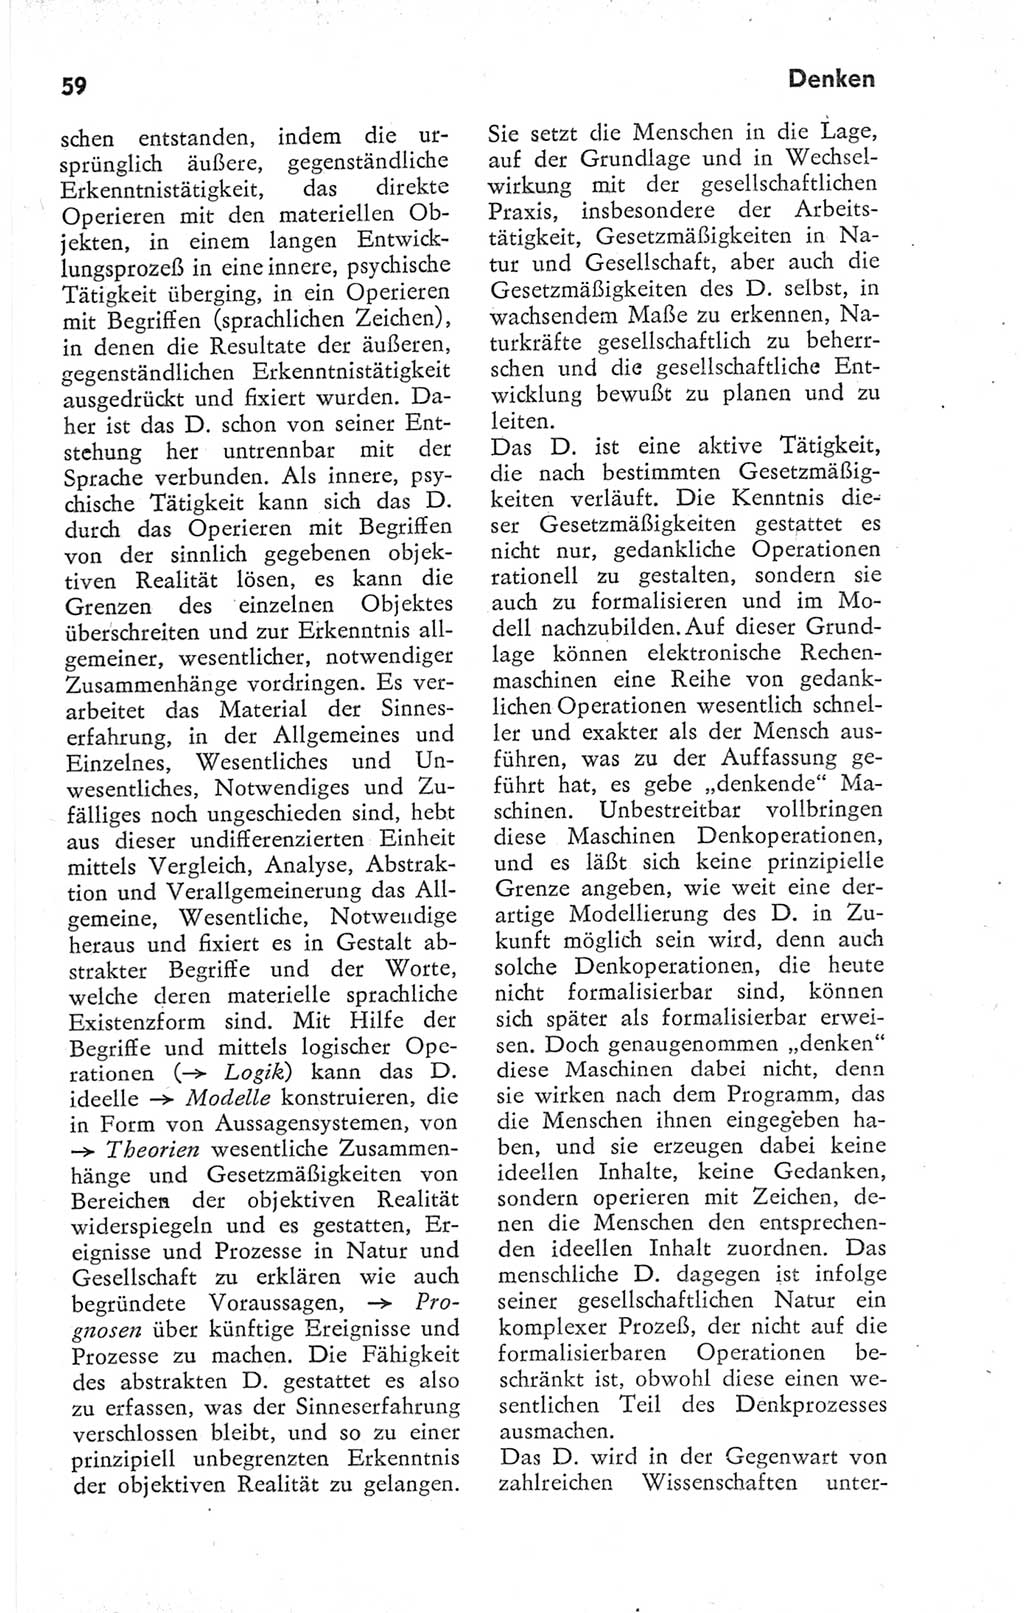 Kleines Wörterbuch der marxistisch-leninistischen Philosophie [Deutsche Demokratische Republik (DDR)] 1974, Seite 59 (Kl. Wb. ML Phil. DDR 1974, S. 59)